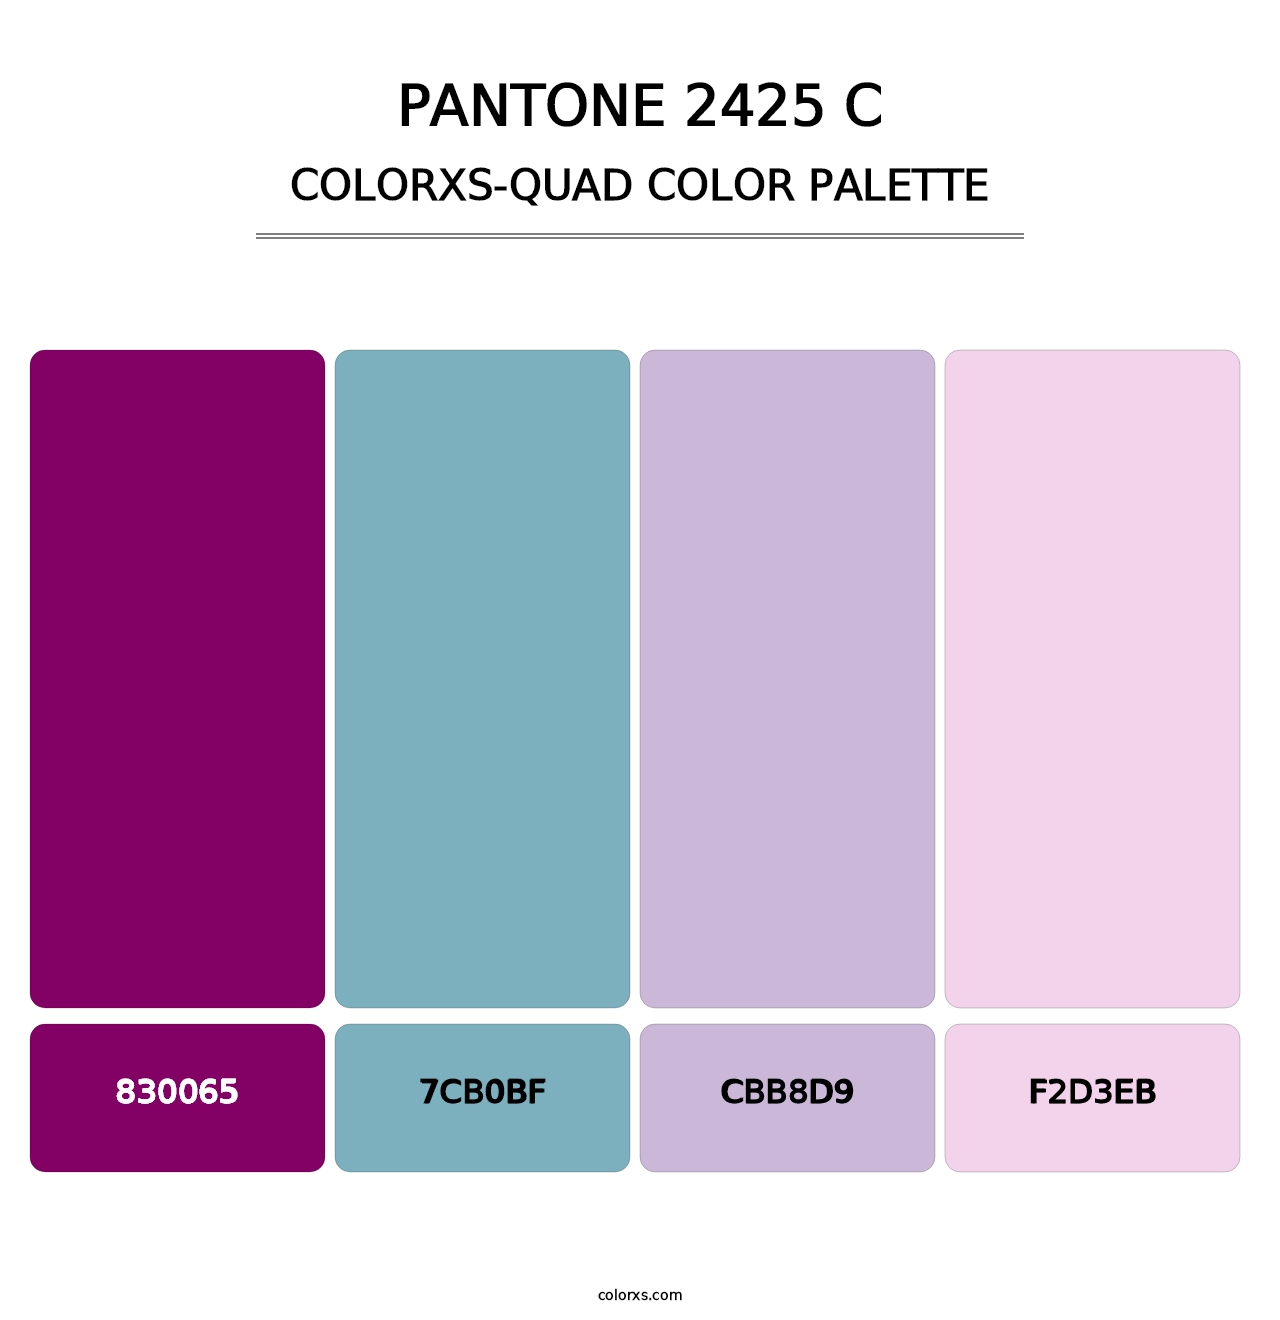 PANTONE 2425 C - Colorxs Quad Palette